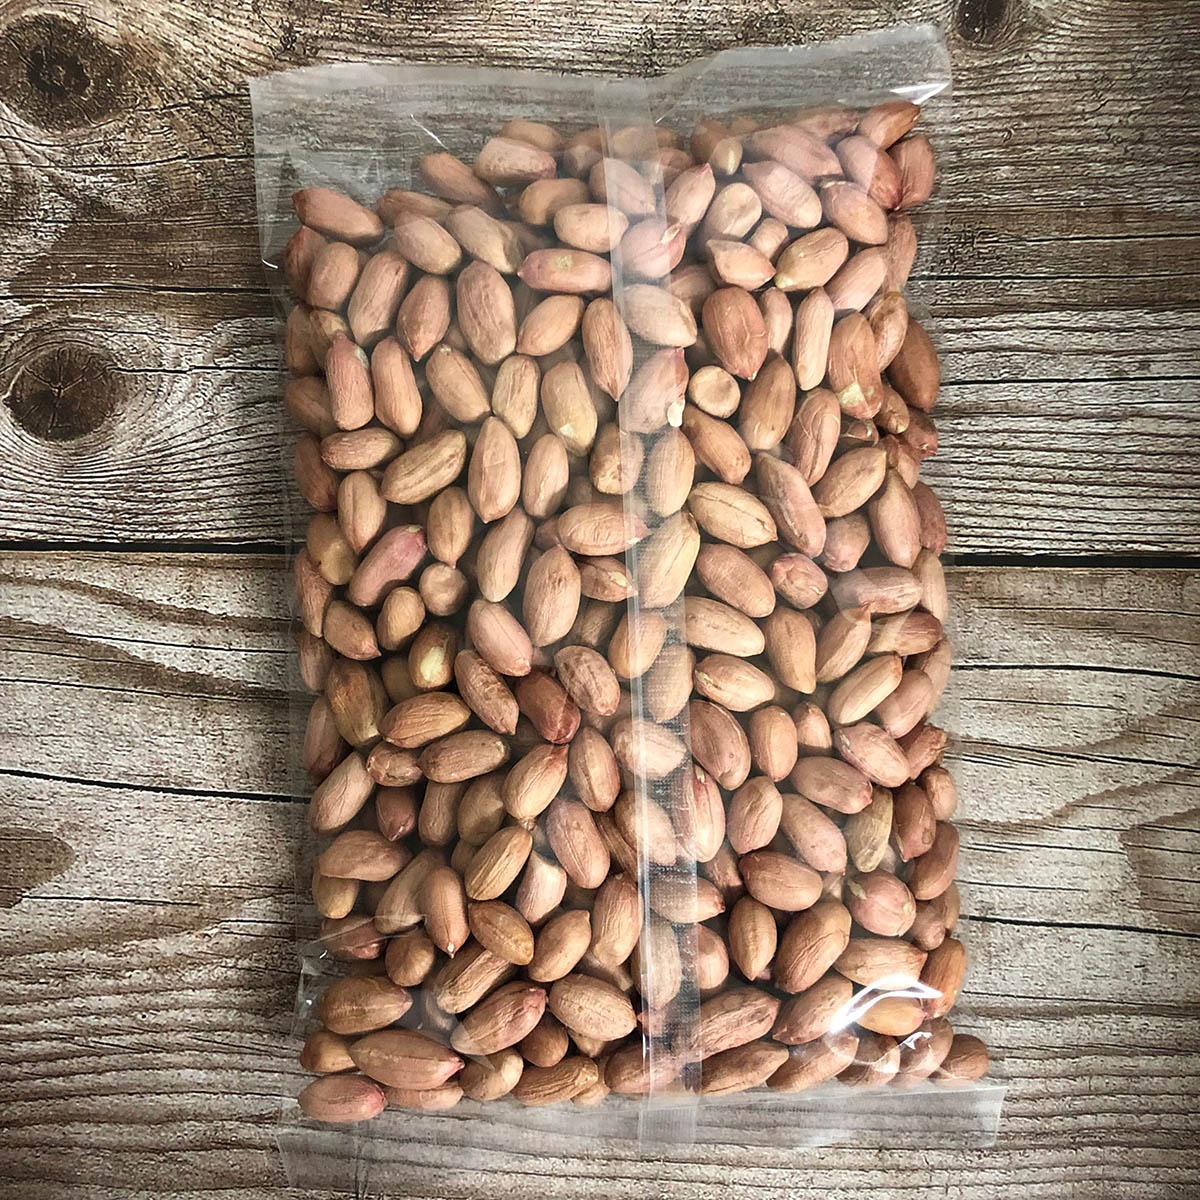 ピーナッツ 大粒 大花生米 約400g 落花生の実 殻なし 生タイプ 中華食材 お粥に ナッツ類